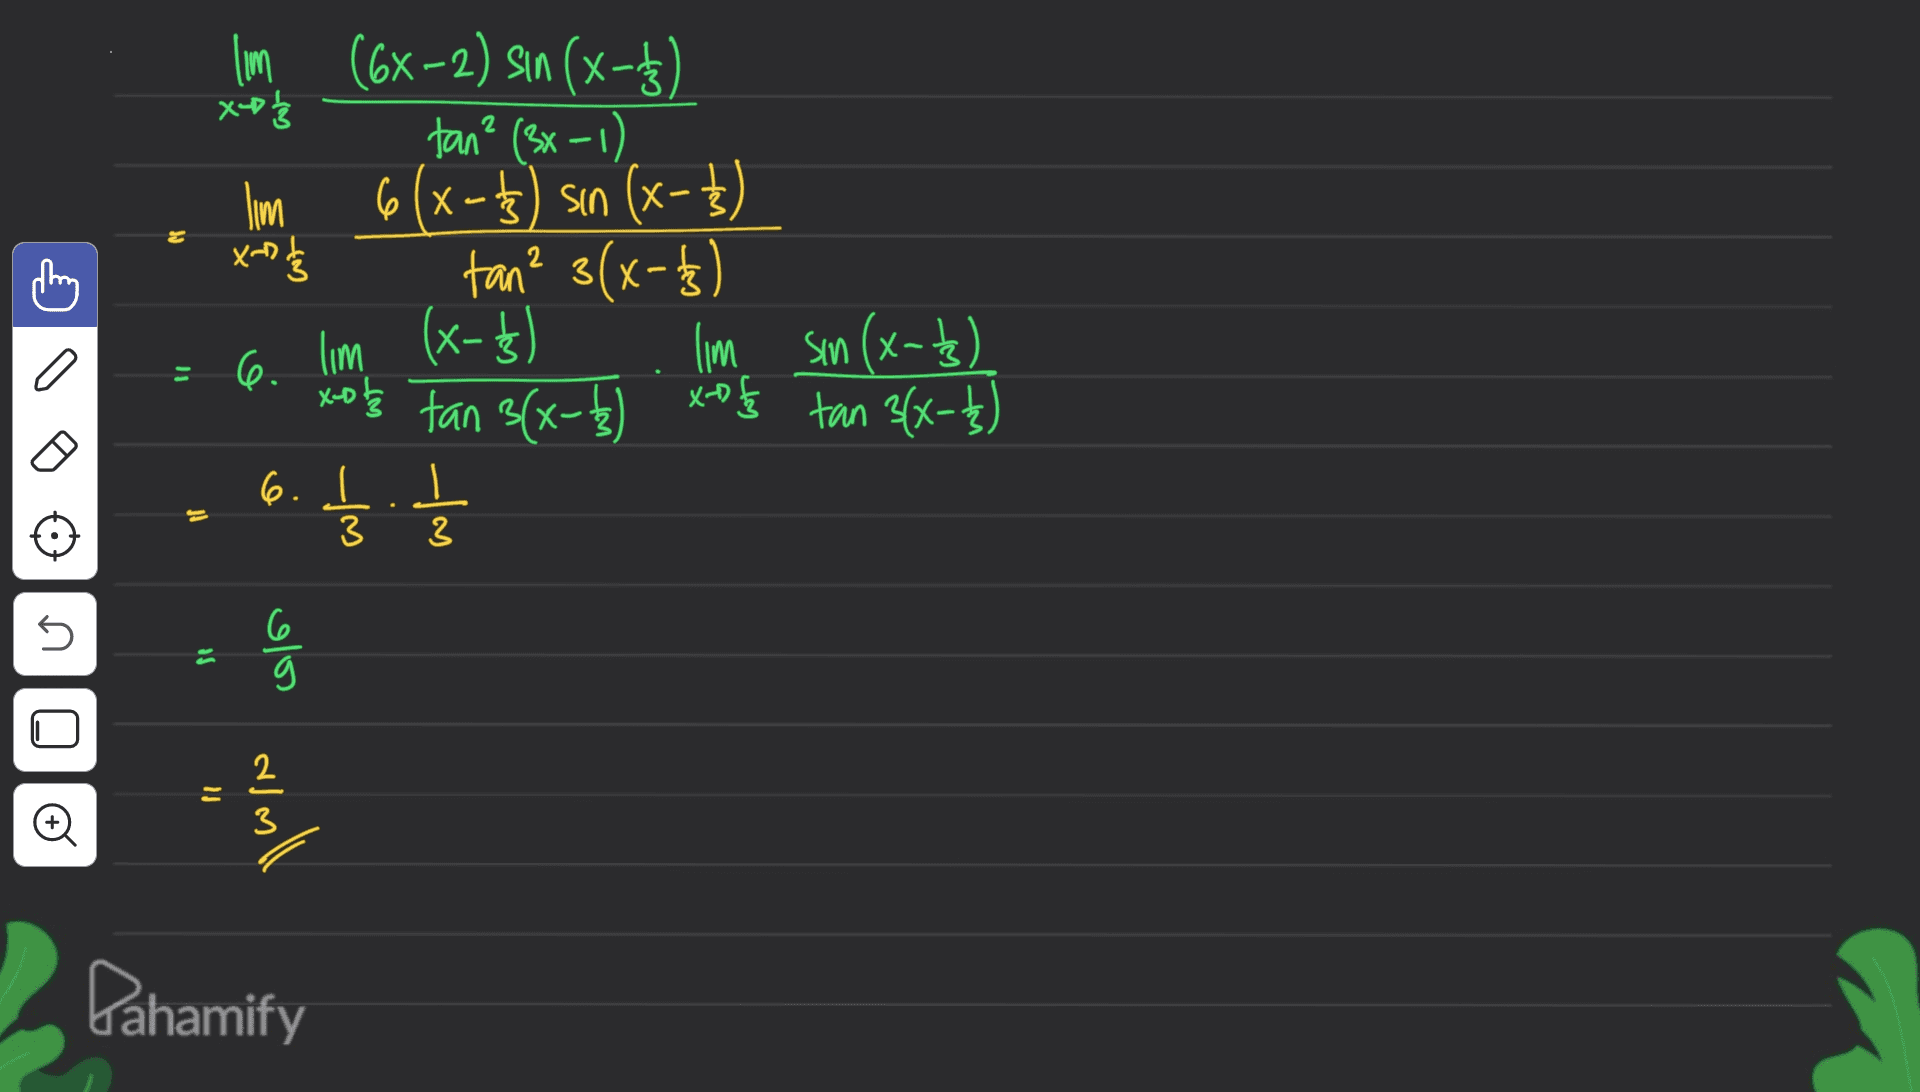 JO lim (6x-2) sin(x-73 2(x) X 1/3 tan² (3x-1) lim 6(x-13) sin (x-3) tan? 3(x-73 lim (x-1) 6. lim sin(x-73) x-ot k tan 3(x-1) xos tan 3(x-7) 6. II xing - - 3. t pf m 5 so olos o almall win Dahamify 